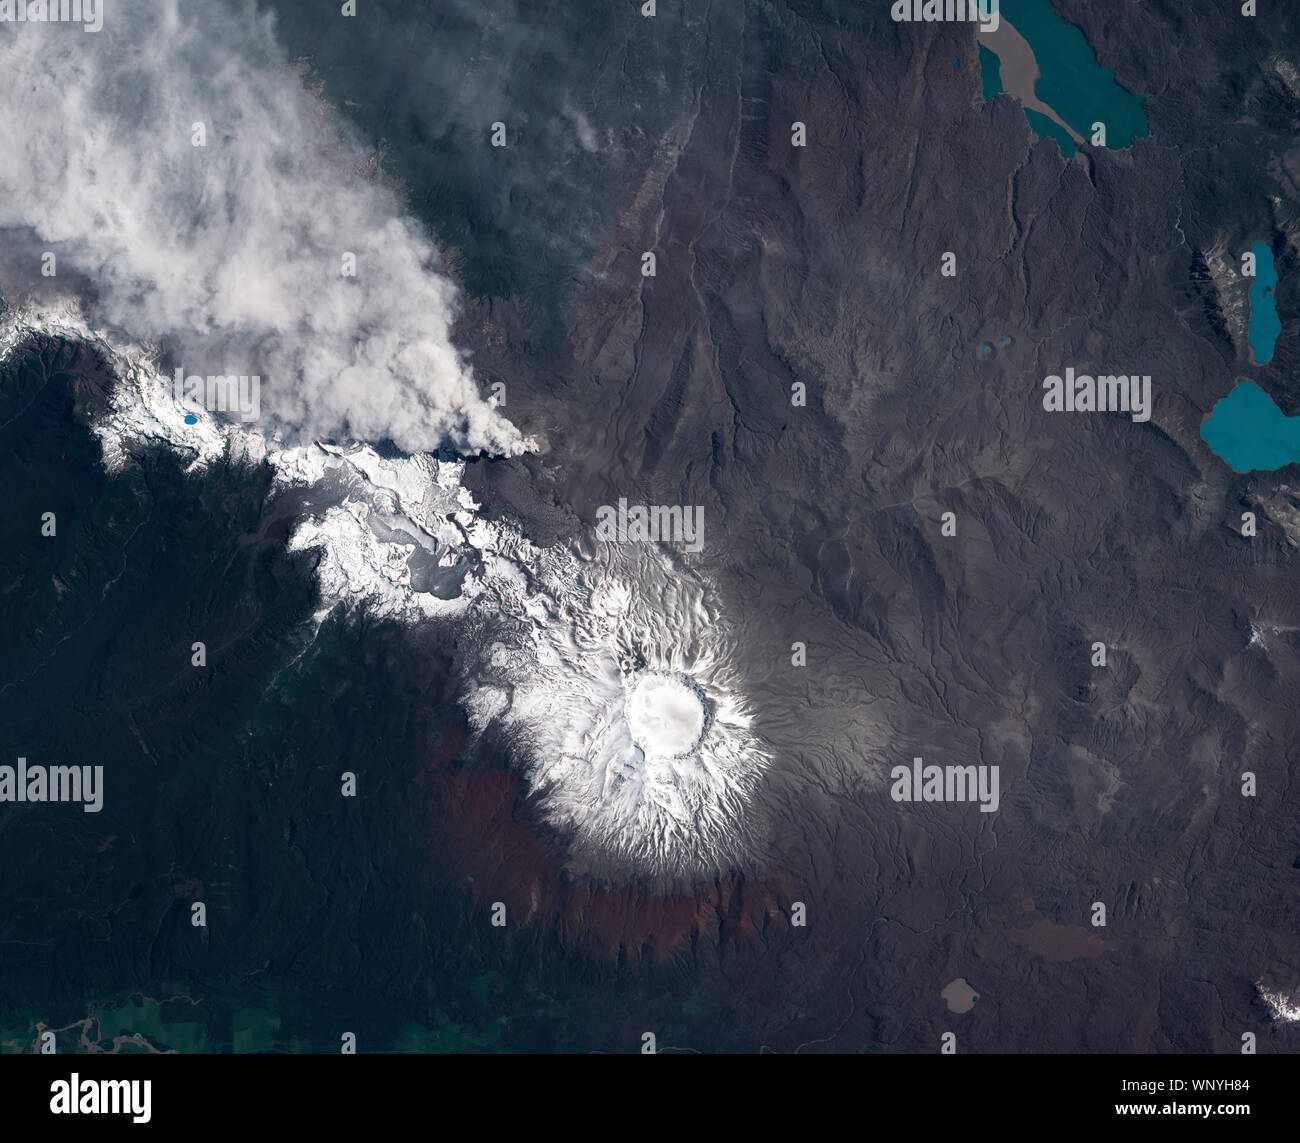 Caulle Puyehue-Cordón eruzione vulcanica, Cile, S America, 23 dicembre 2011, dalla NASA/Jesse Allen/DPA Foto Stock